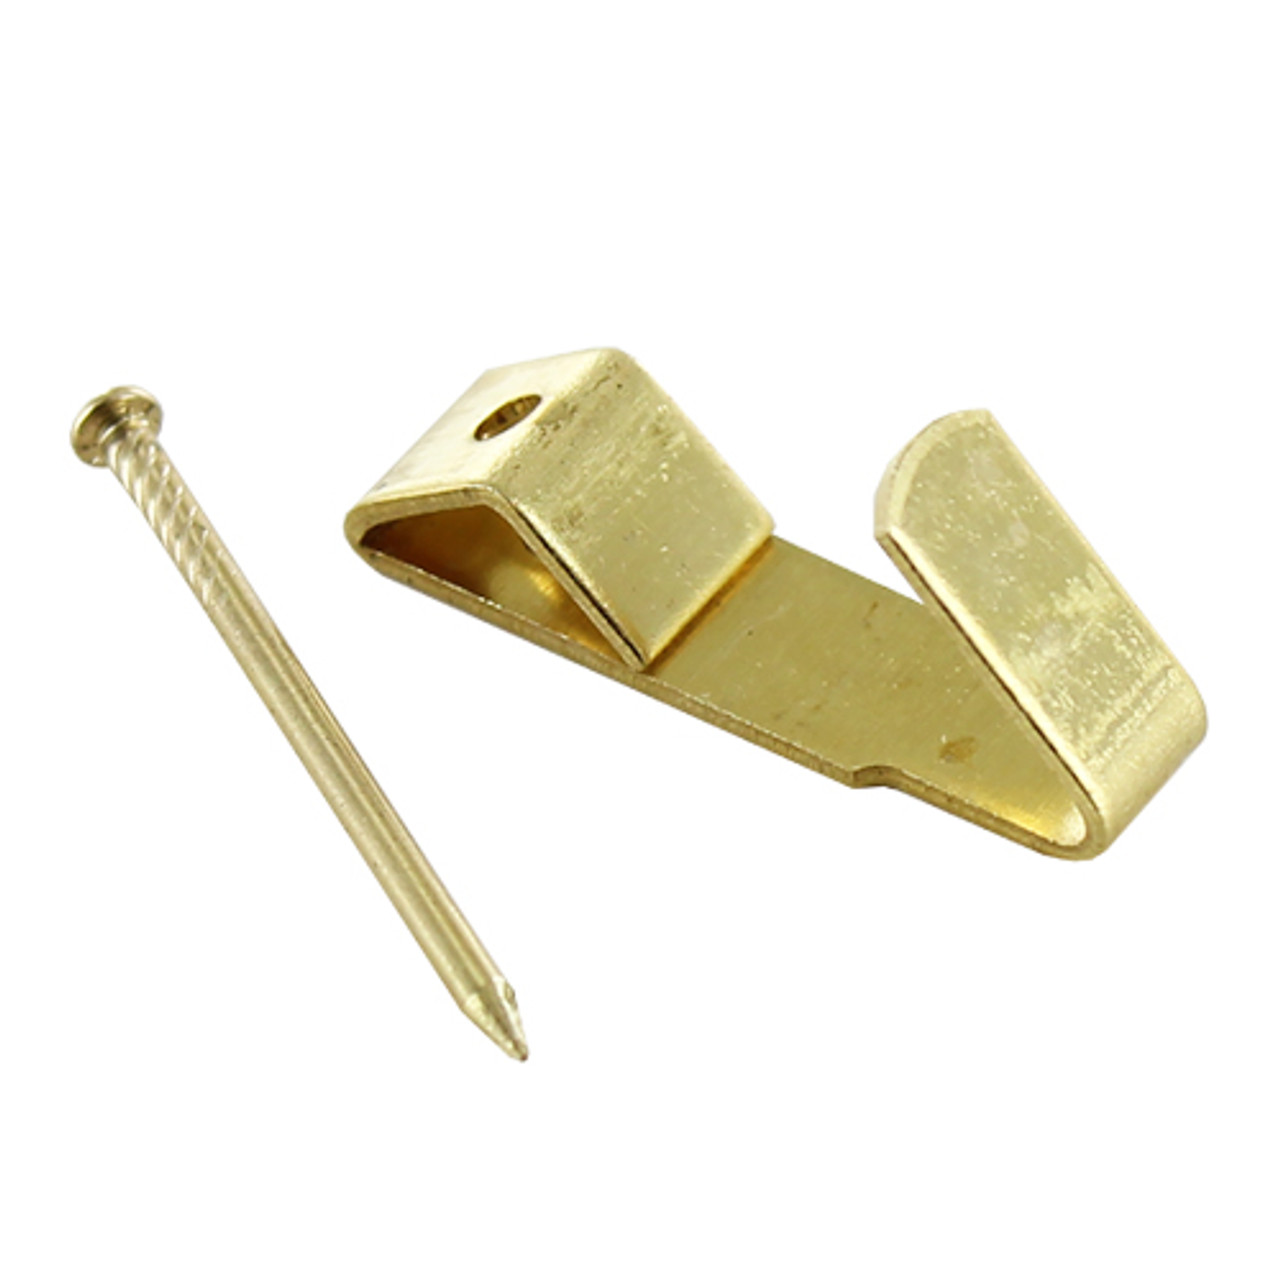 Small Brass Wall Hooks (No.1) – Qty 100